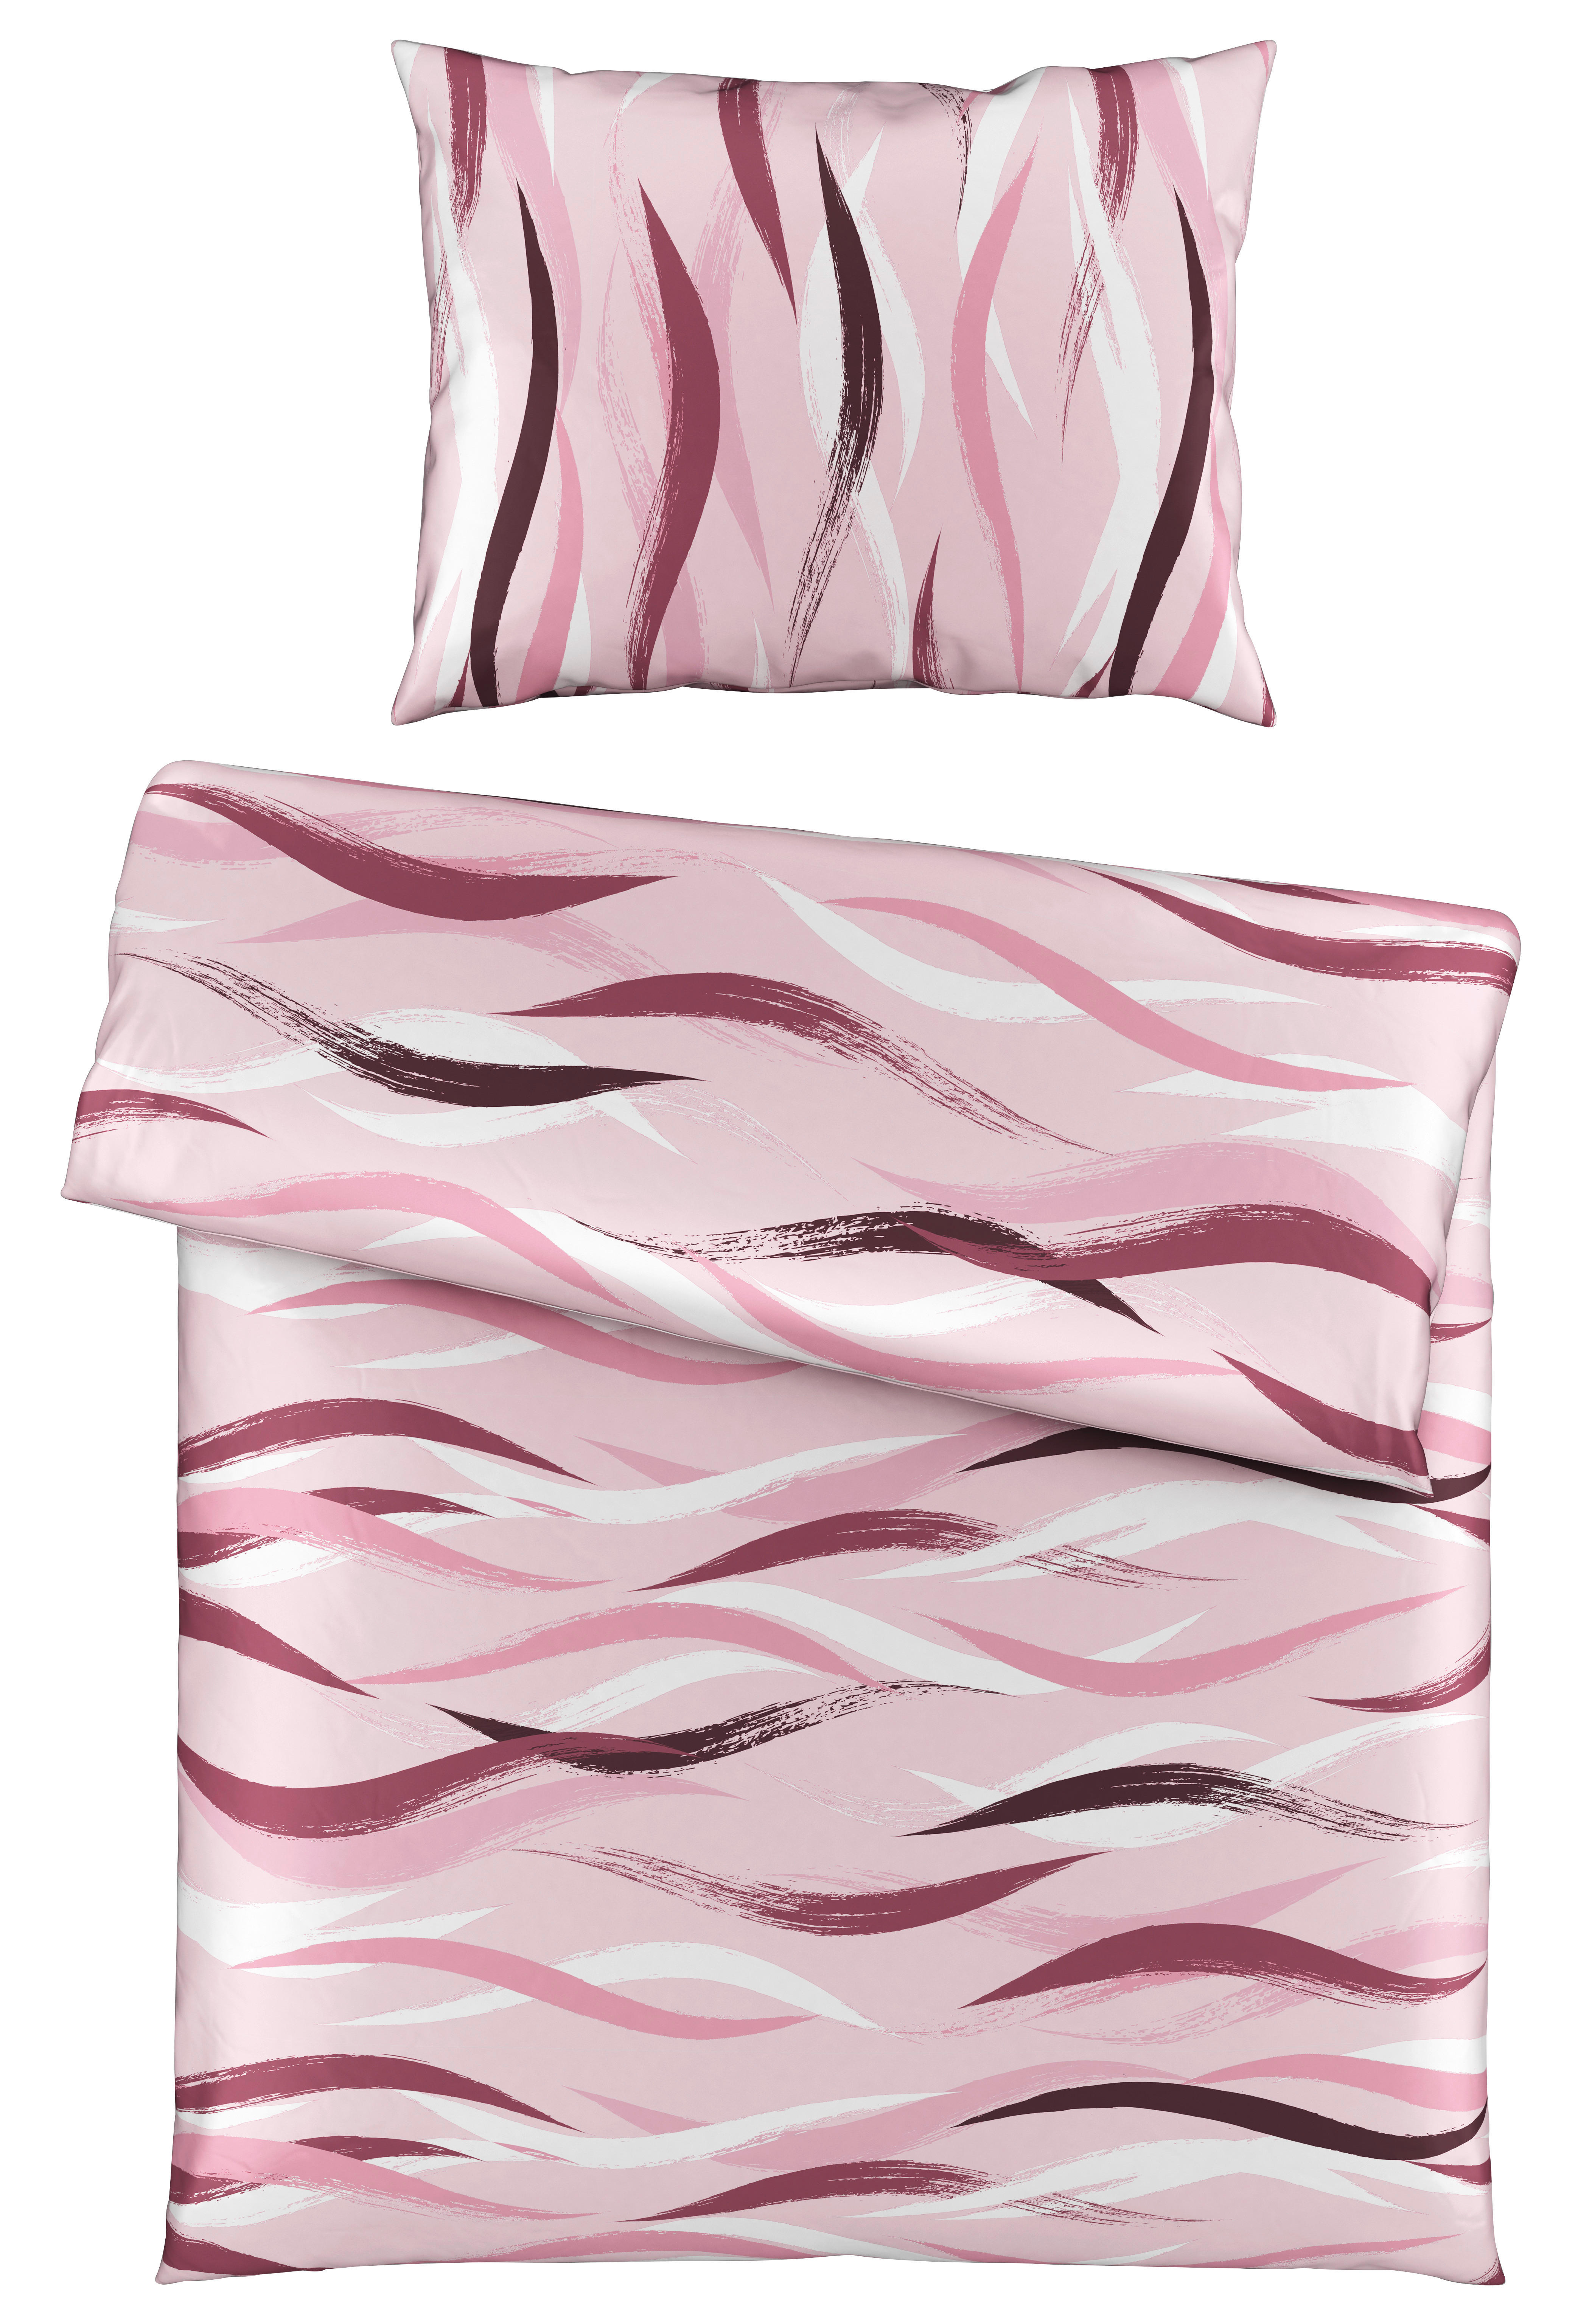 POSTEĽNÁ BIELIZEŇ, mikrovlákno, ružová, 140/200 cm - ružová, Konventionell, textil (140/200cm) - Boxxx